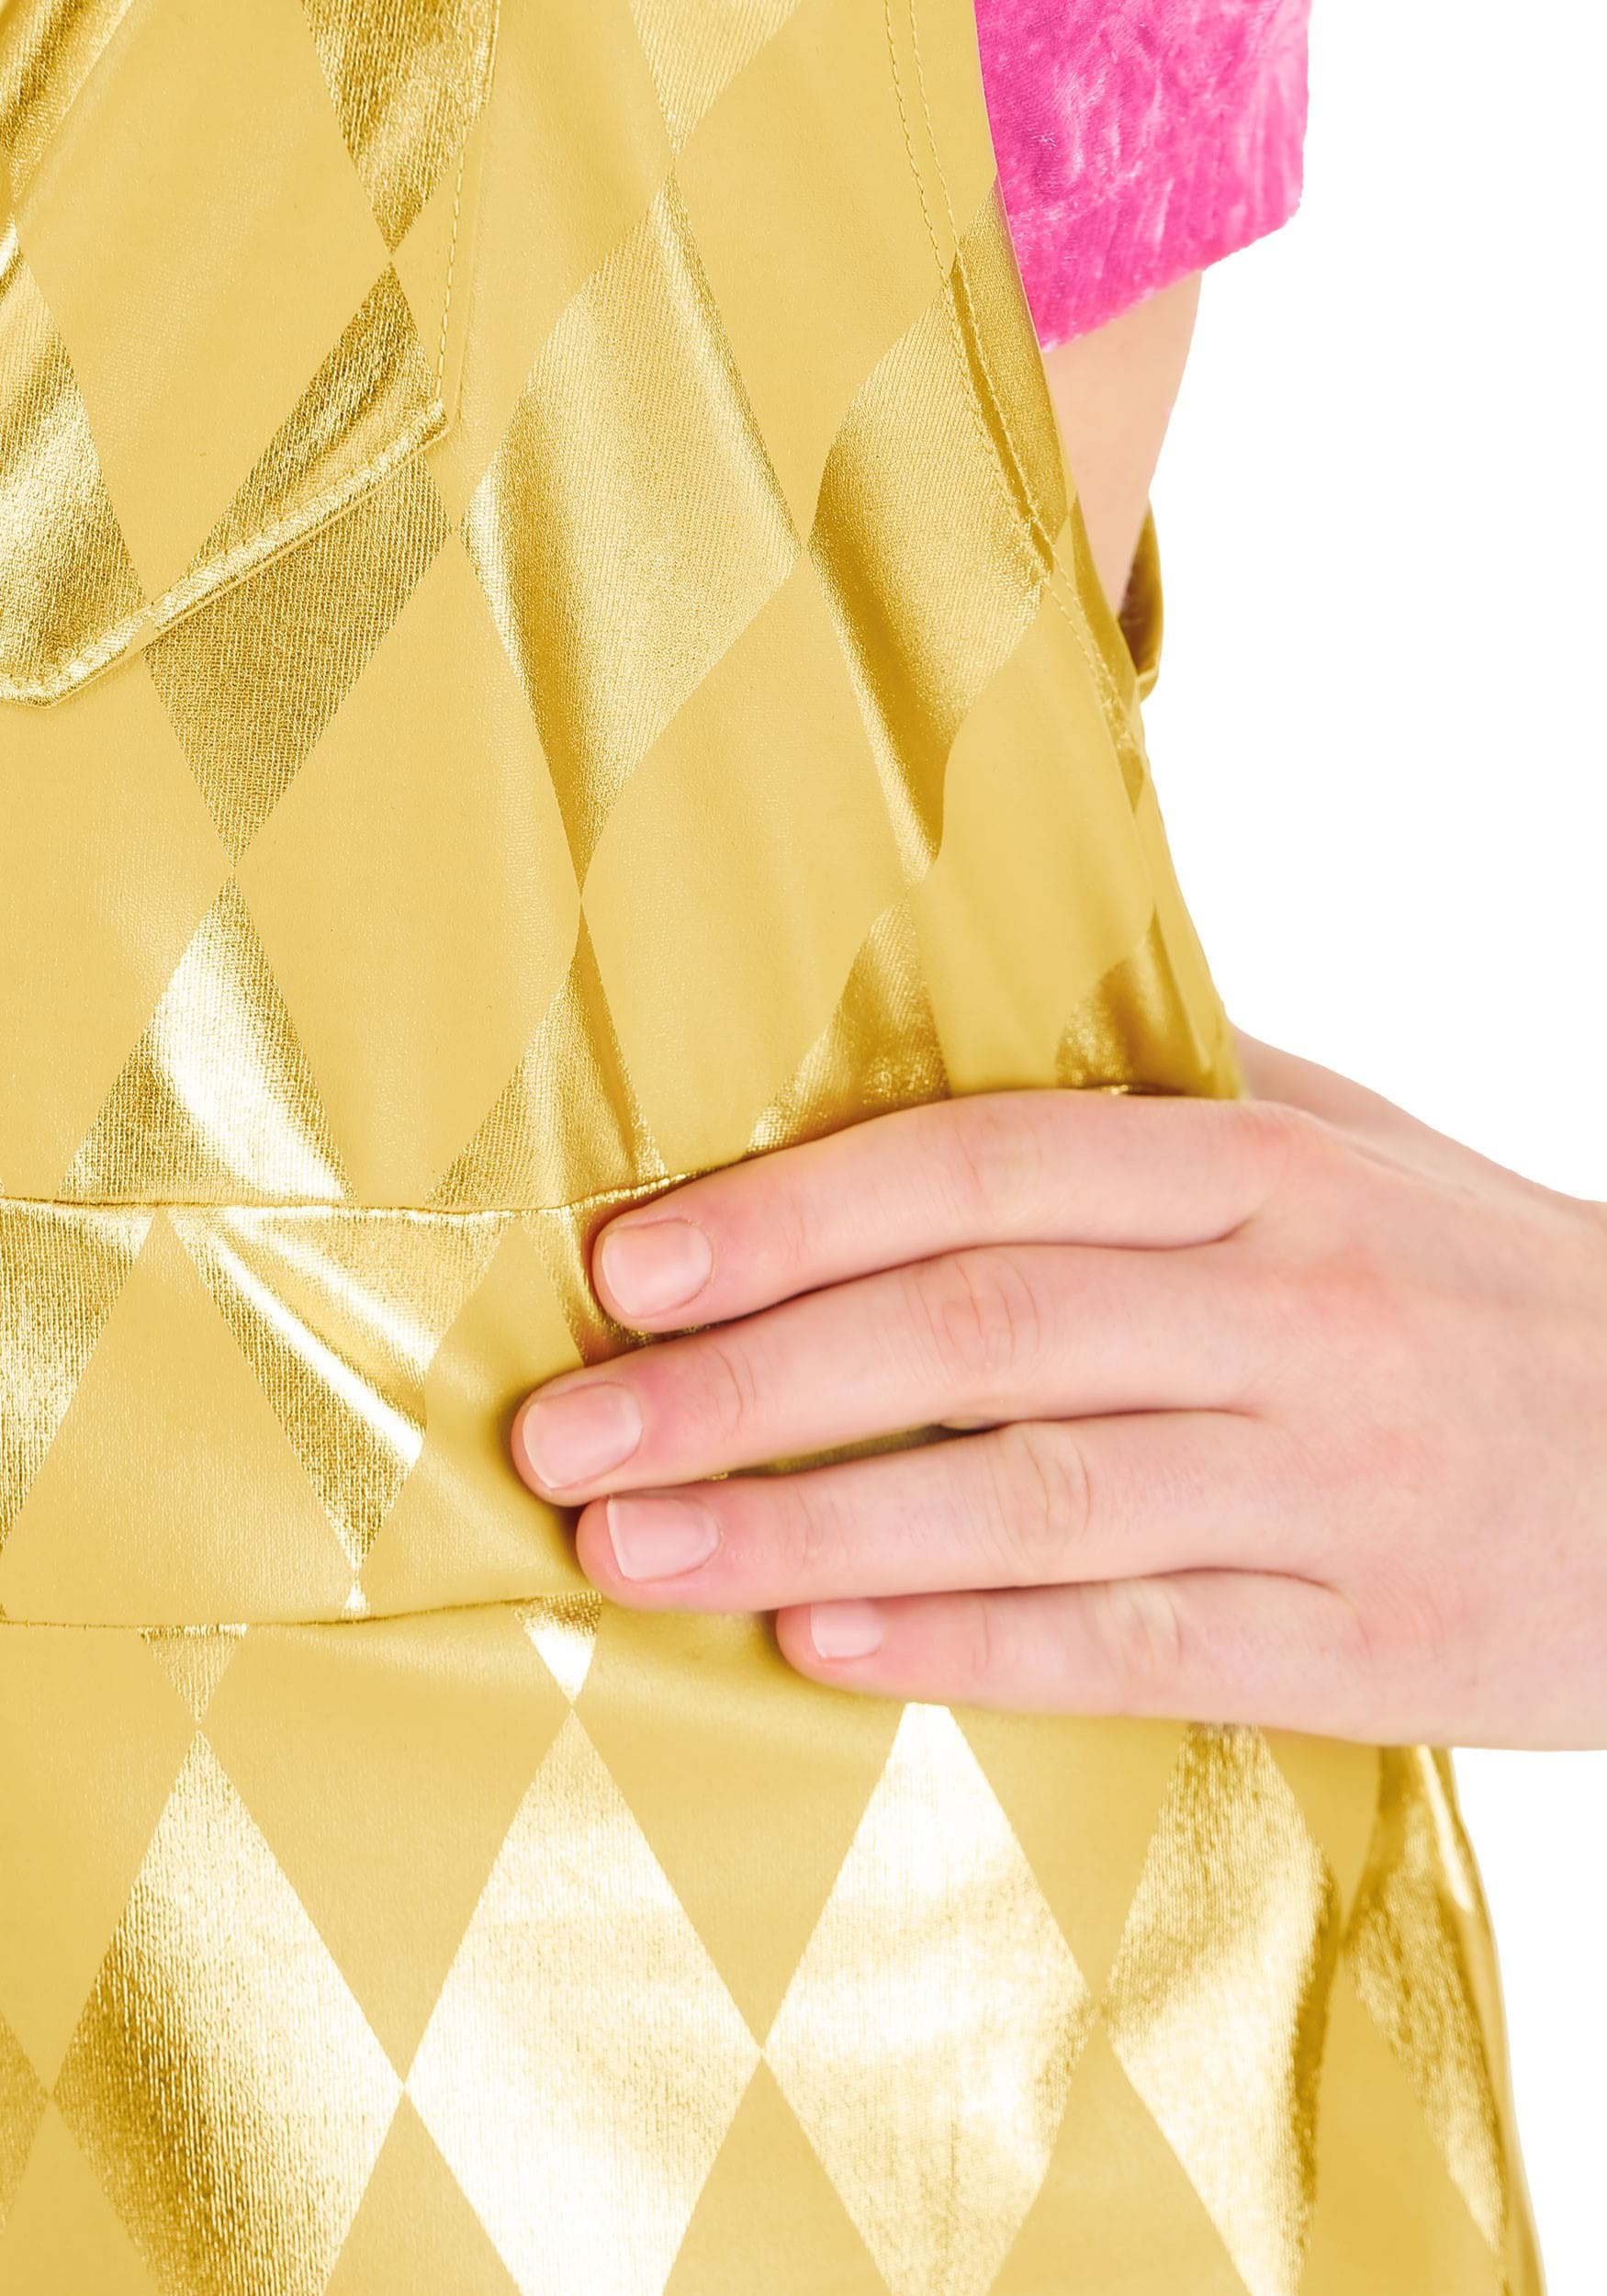 Harley Quinn Gold Overalls Fancy Dress Costume For Women